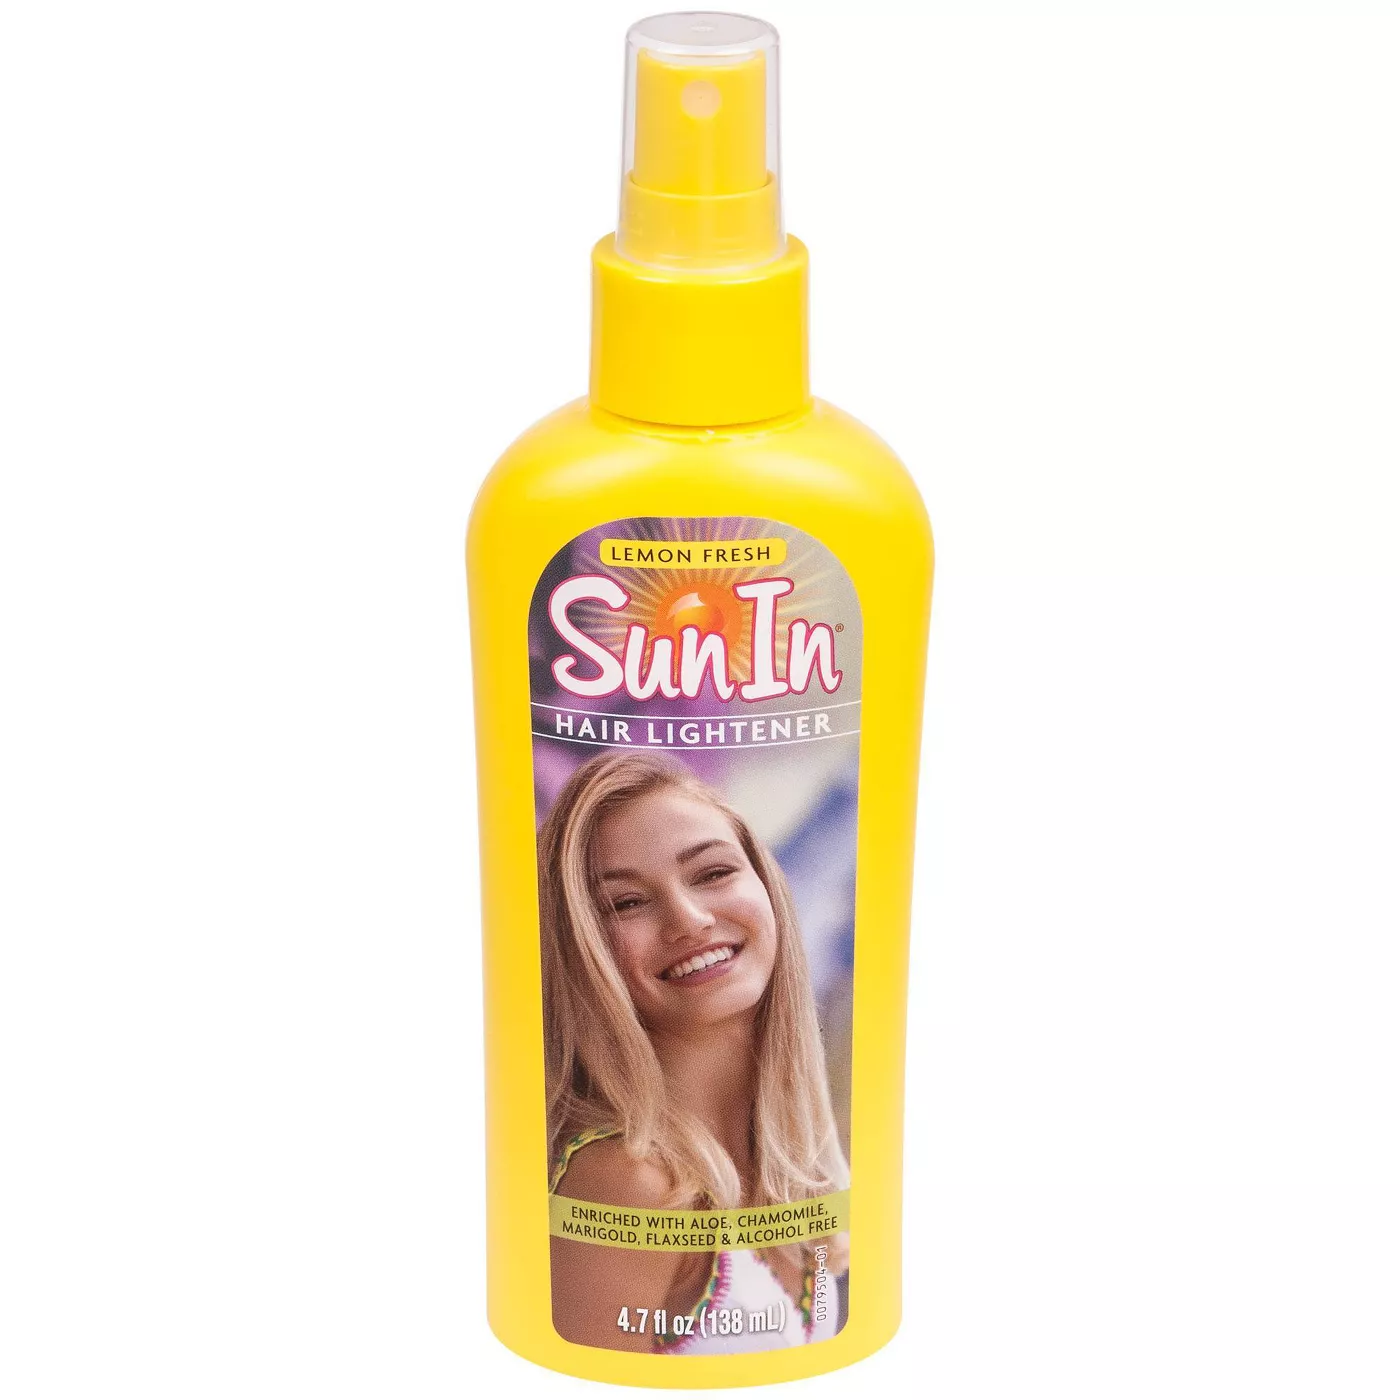 Sun In Lemon Fresh Hair Lightener - 4.7 fl oz - image 1 of 5